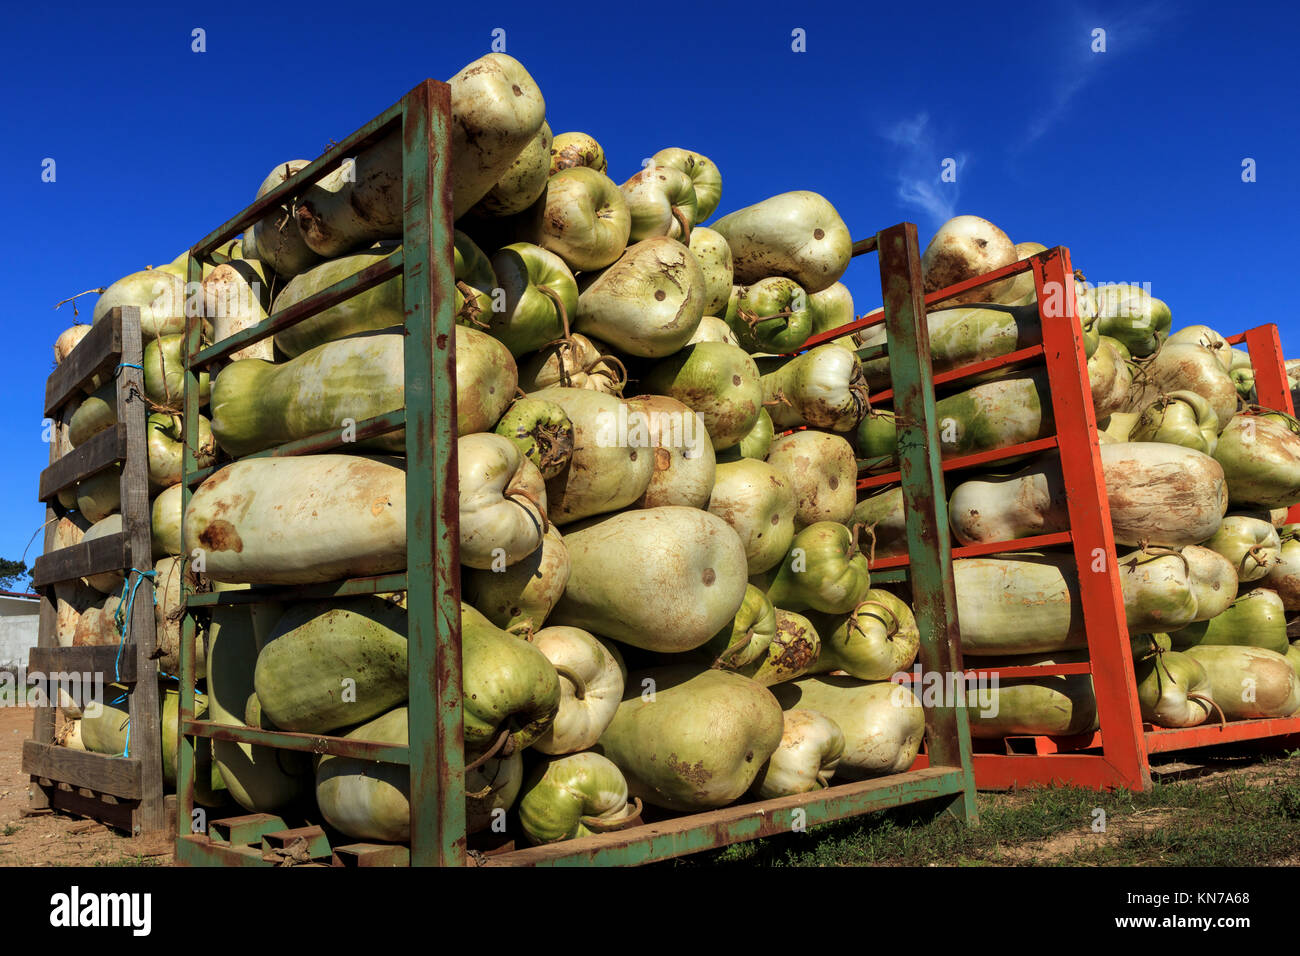 Les melons zucca (gourdes) chargés sur des palettes en acier. Ils sont membres de la famille des curcubitacés et utilisé pour, entre autres choses, des fruits confits. Banque D'Images